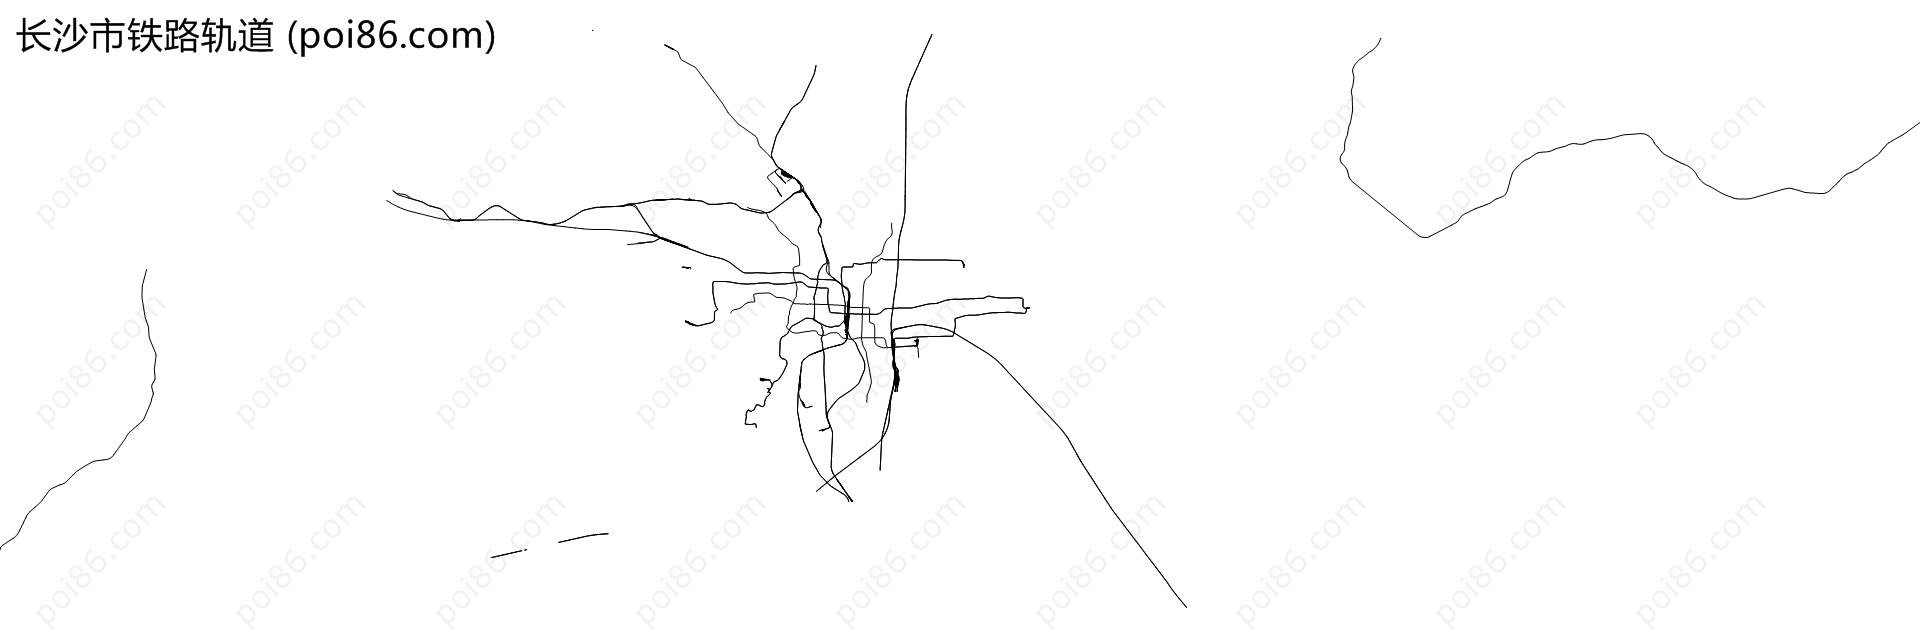 长沙市铁路轨道地图